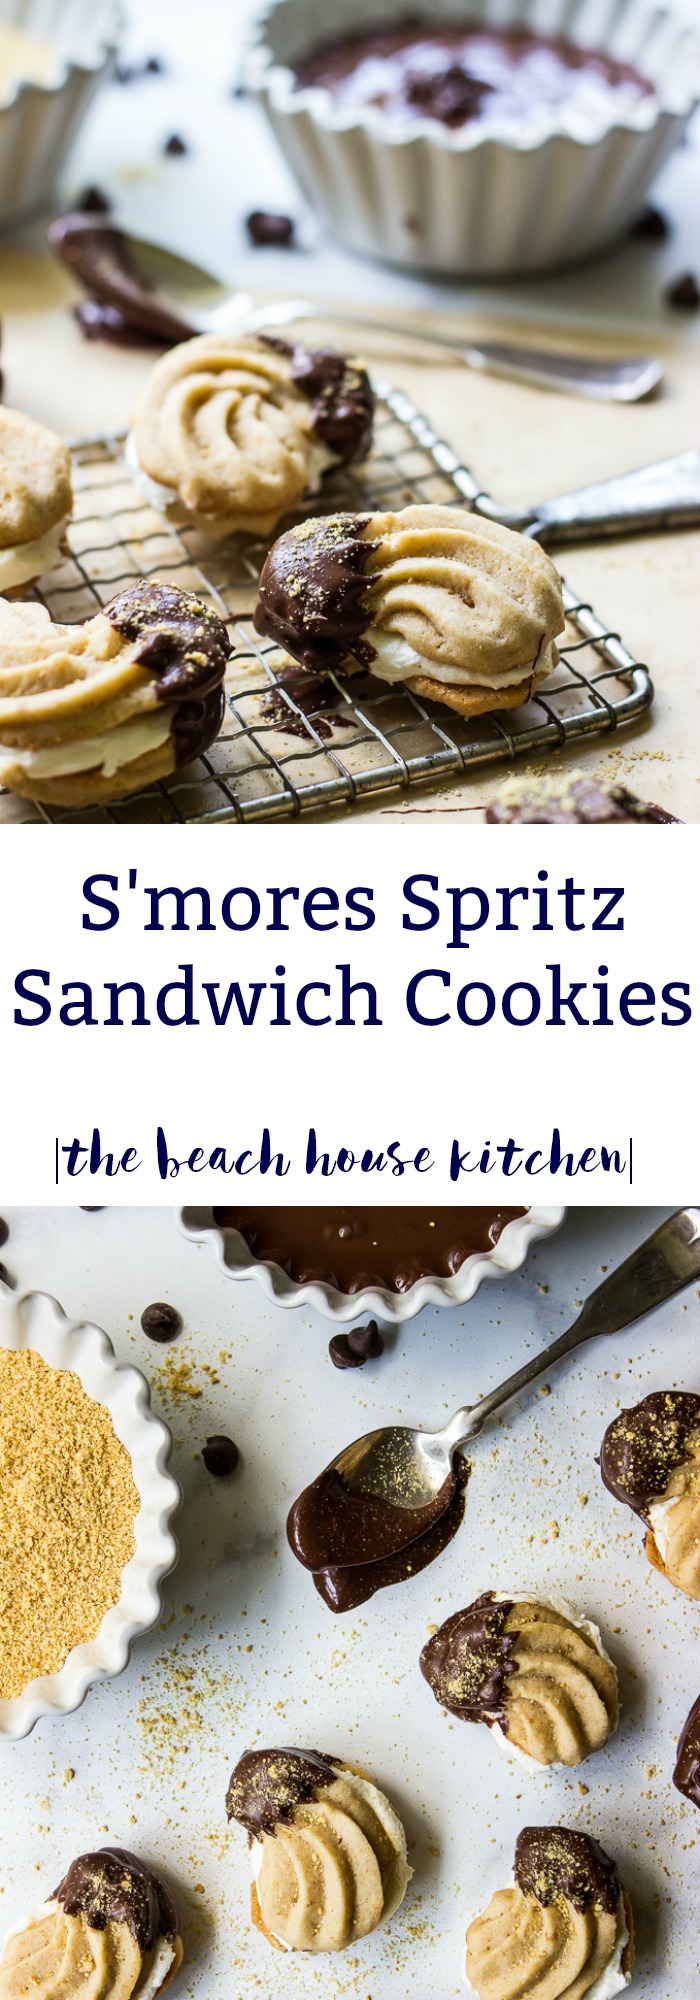 S'mores Spritz Sandwich Cookies